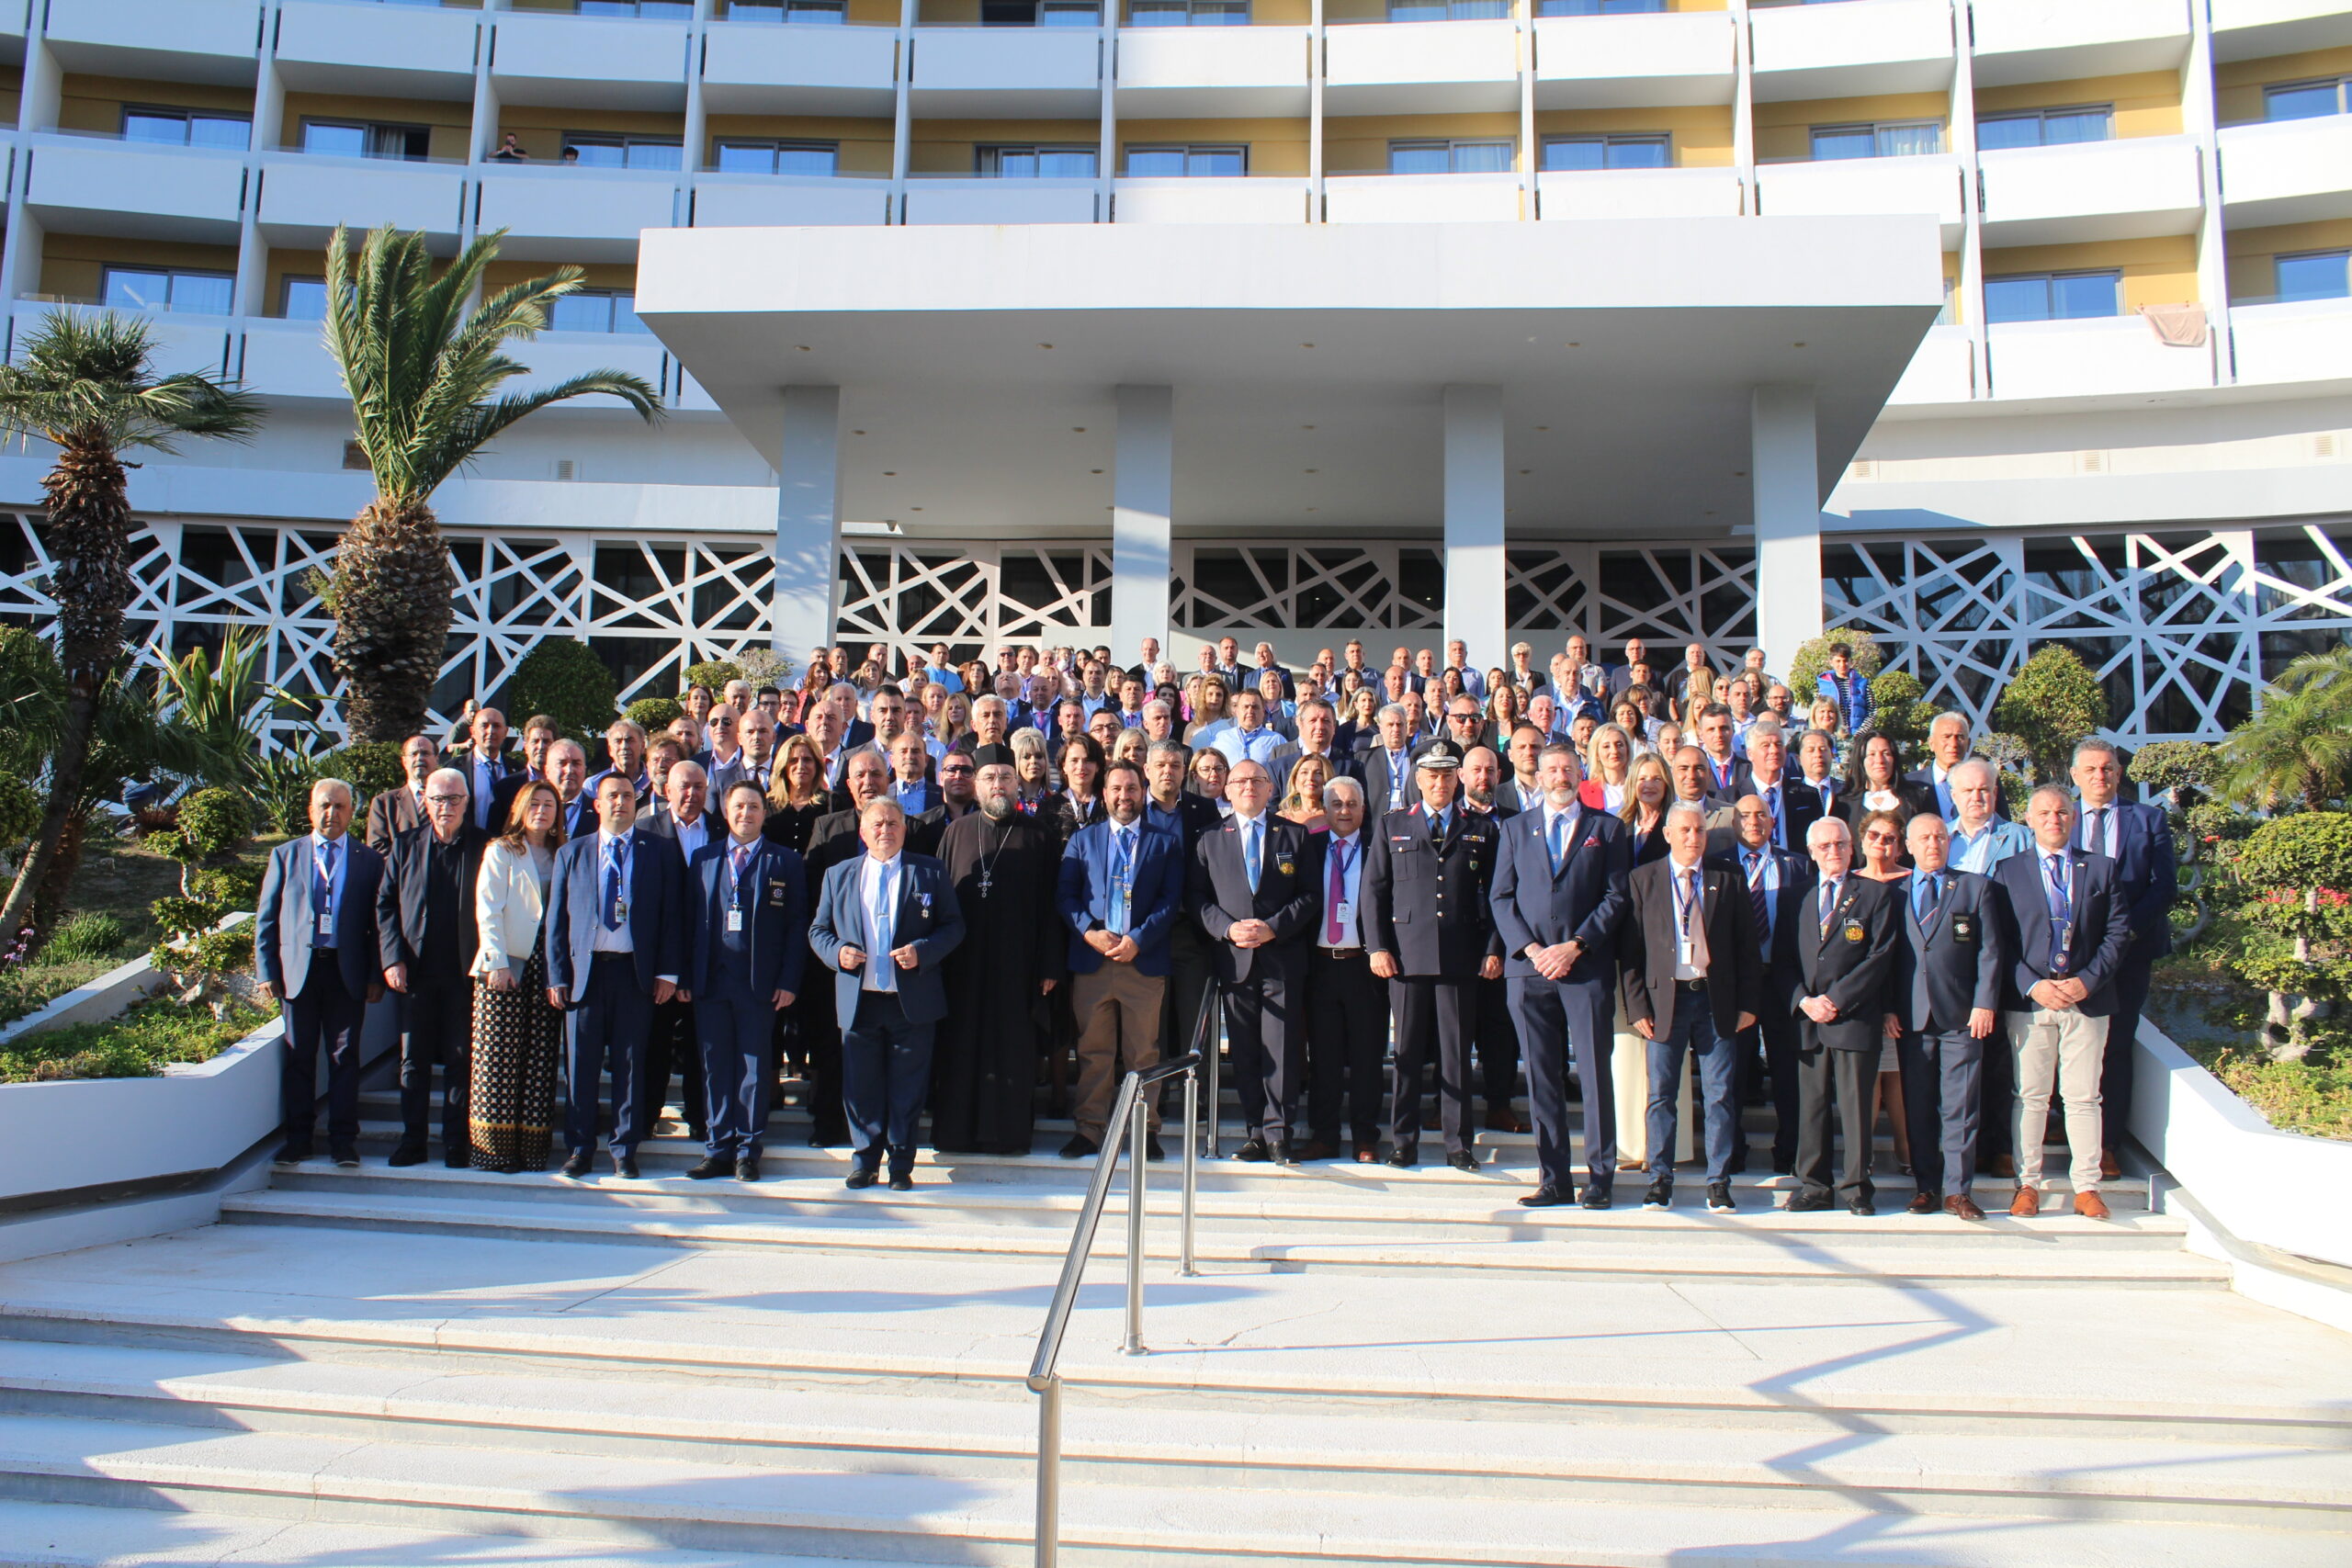 Ρόδος: Πραγματοποιήθηκε με επιτυχία το 40ο Πανελλήνιο Συνέδριο του Ελληνικού Εθνικού Τμήματος της Διεθνούς Ενώσεως Αστυνομικών (Φωτο)